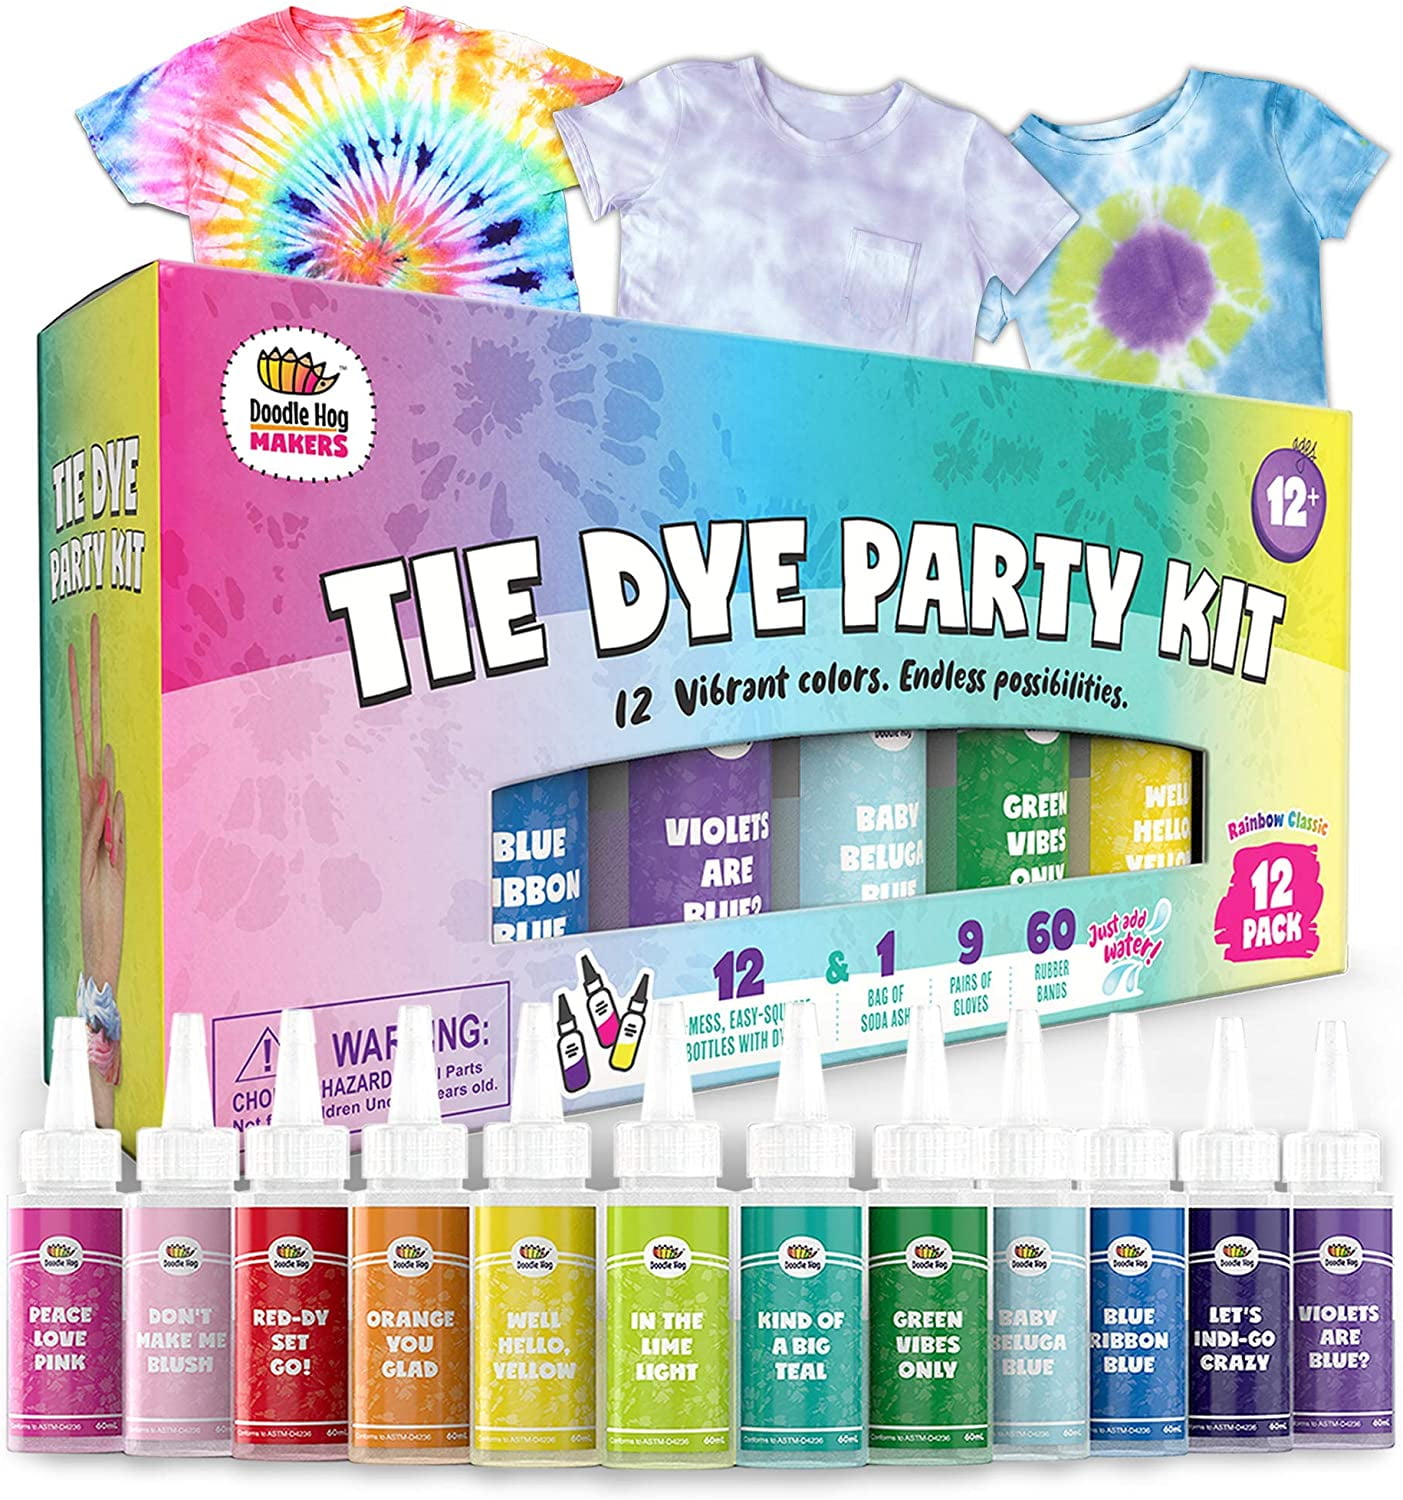 Color Splash Tie Dye Kit with 8 Permanent Colors, Soda Ash, Squeeze Bottles  - Co